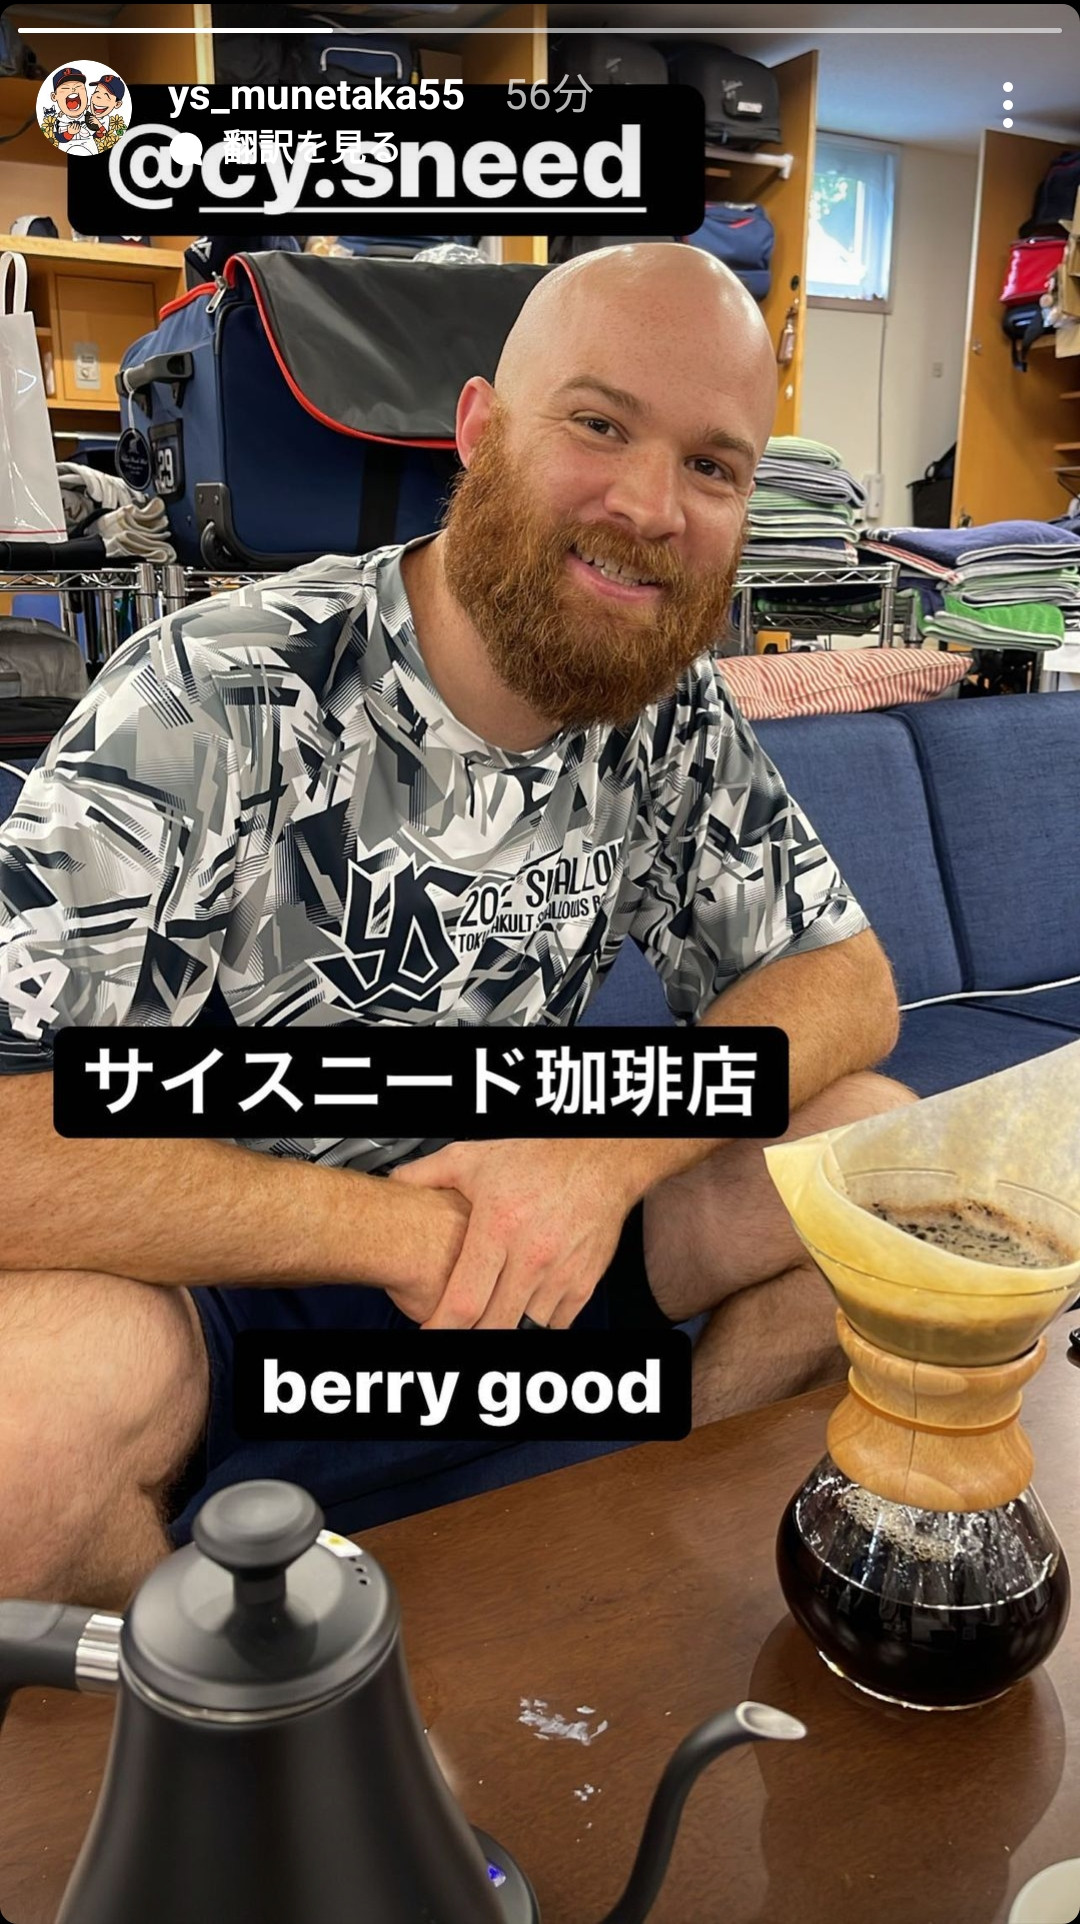 【悲報】 村上宗隆「berry good」